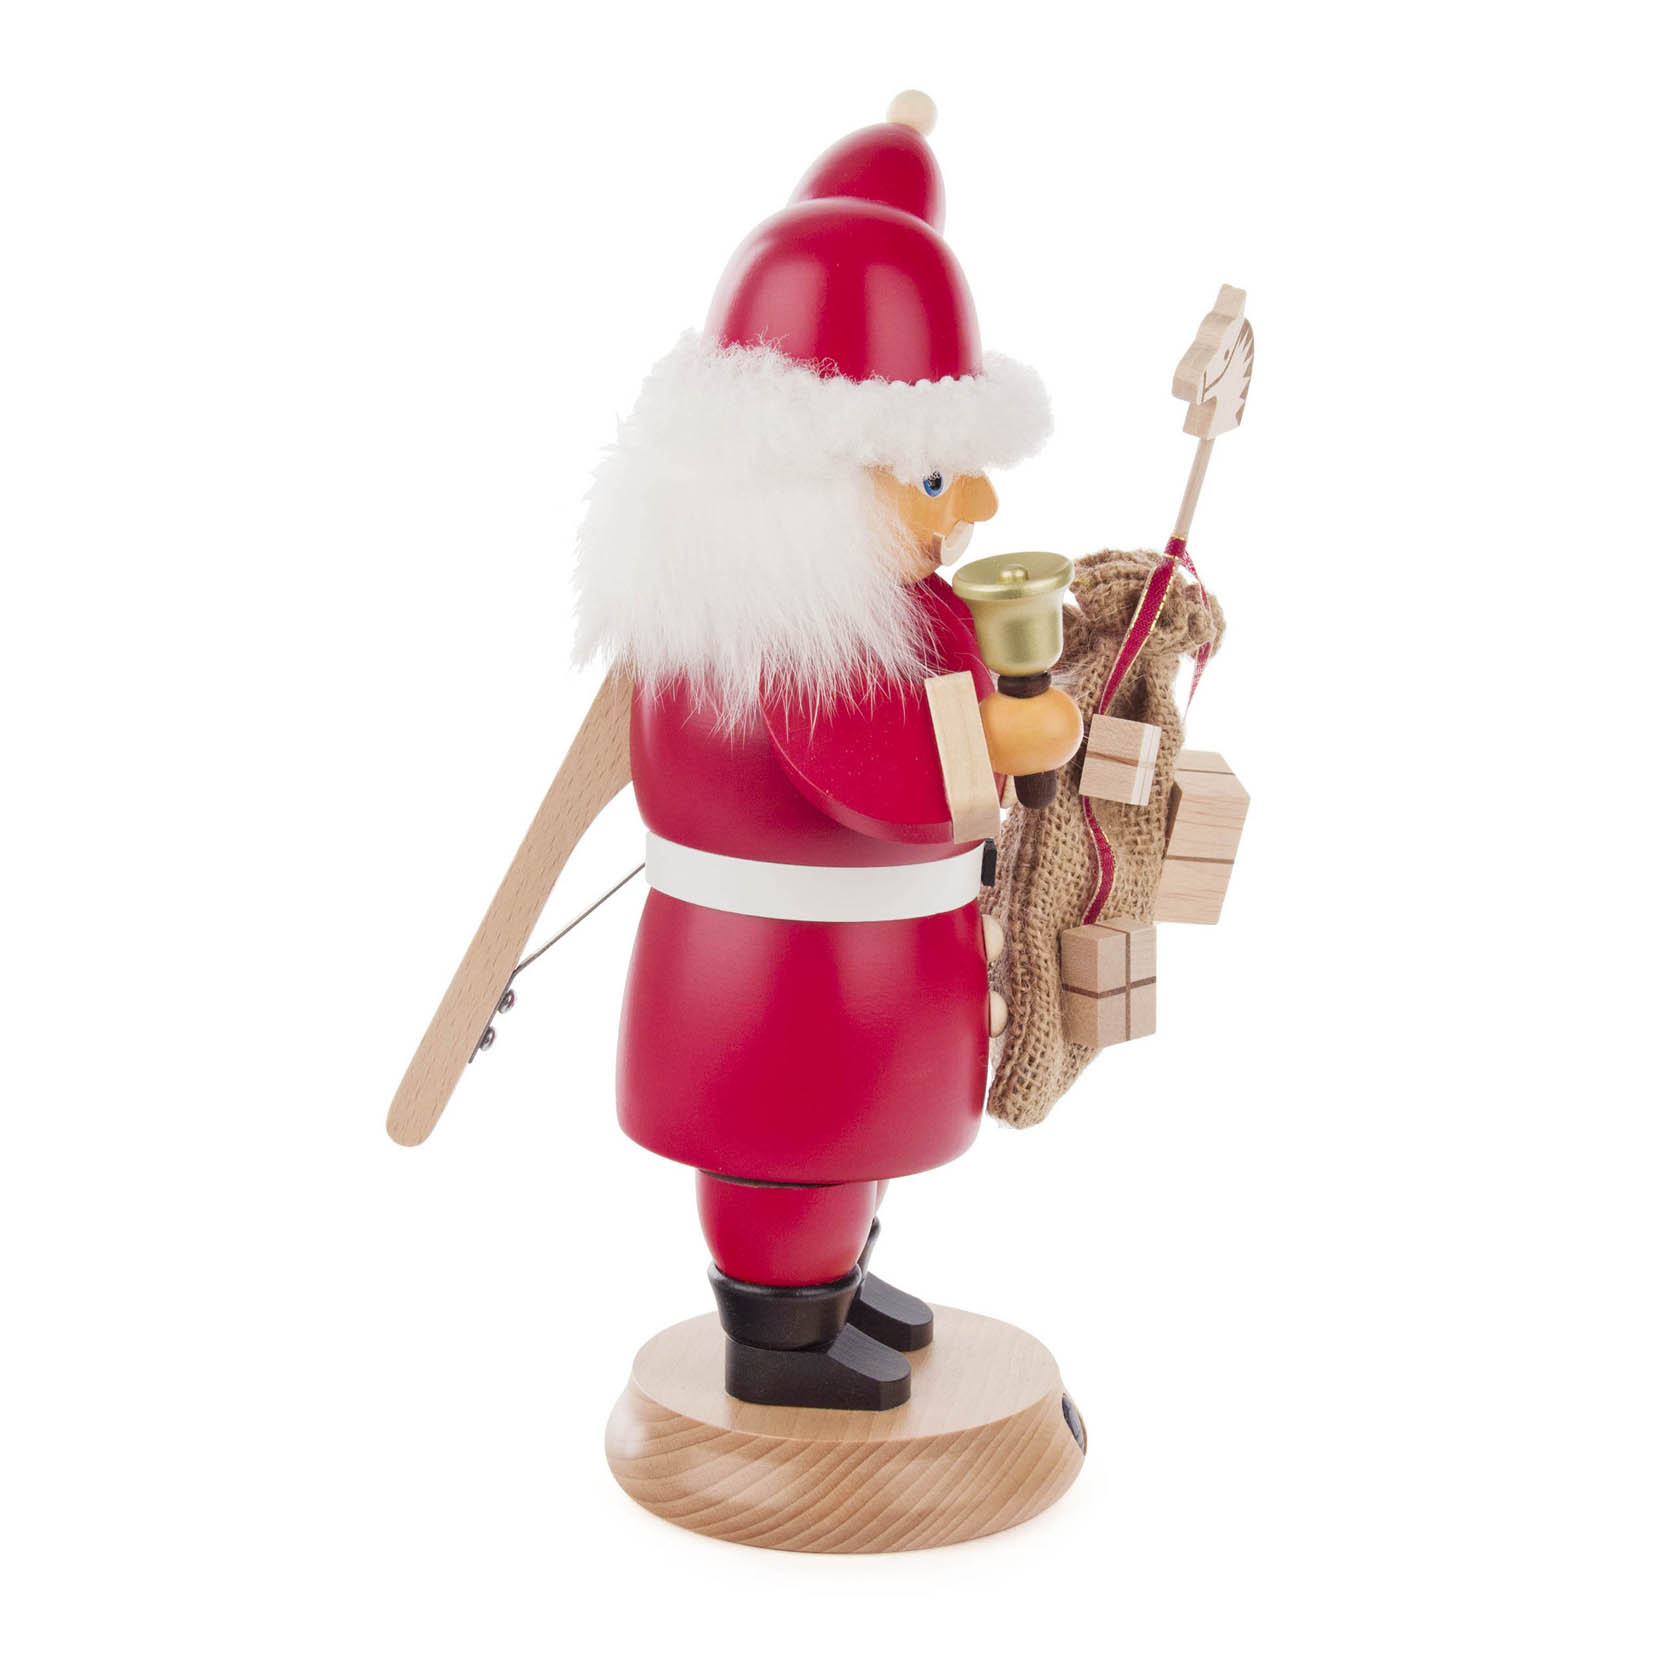 Rauchender Nussknacker "RauchKnacker" Weihnachtsmann mit Glocke und Sack 27cm